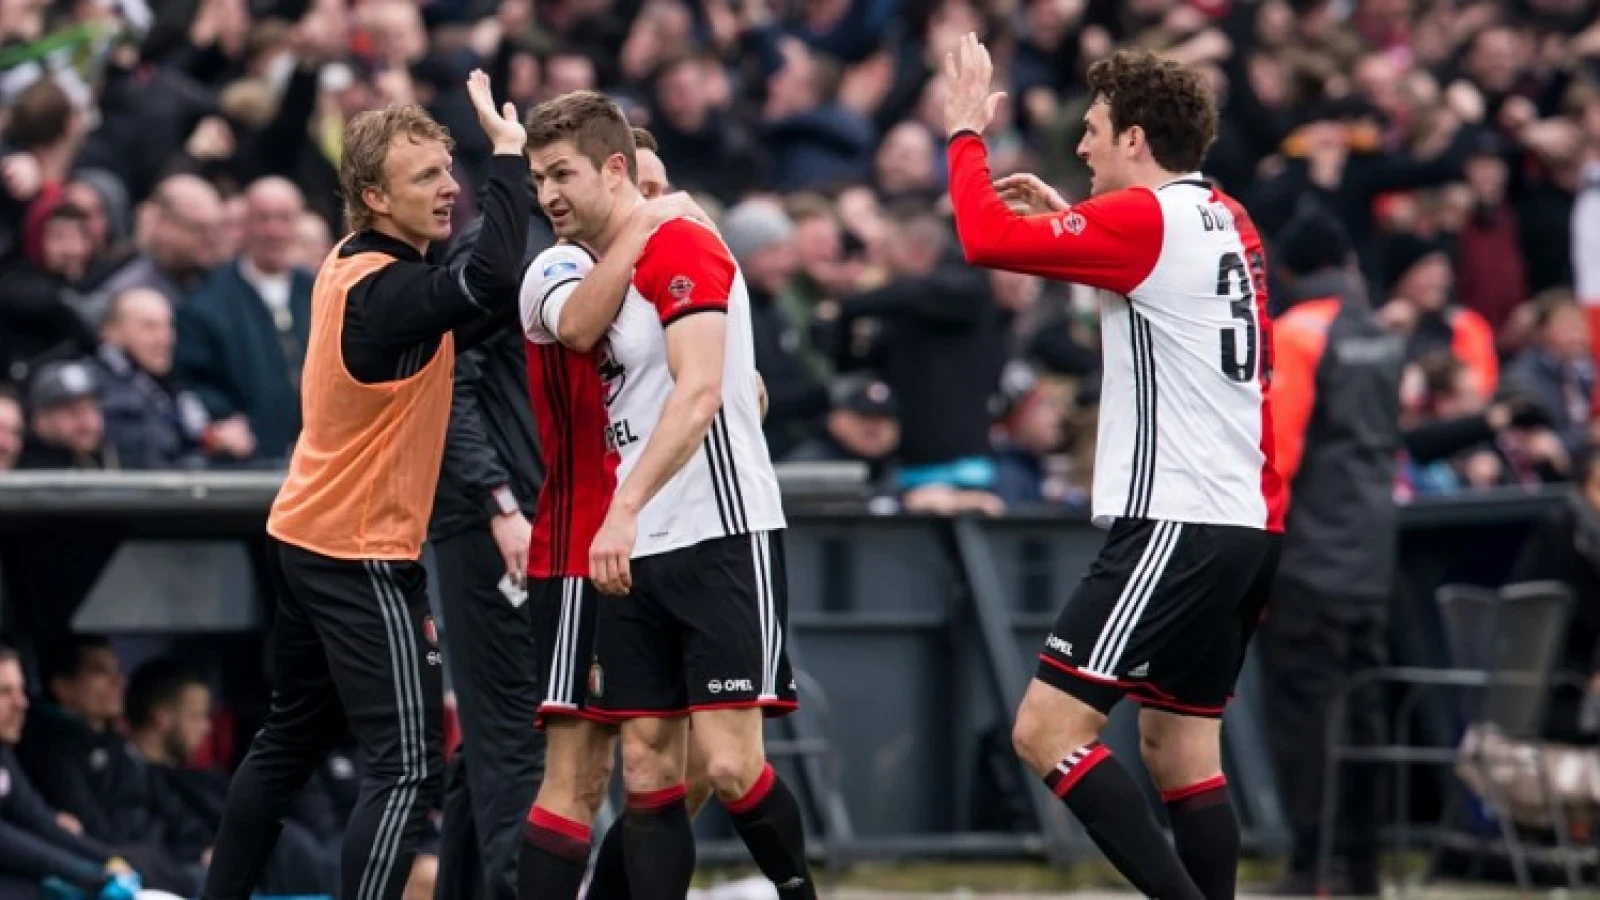 Stand | Feyenoord met zege tegen PSV op evenveel punten als vorig seizoen